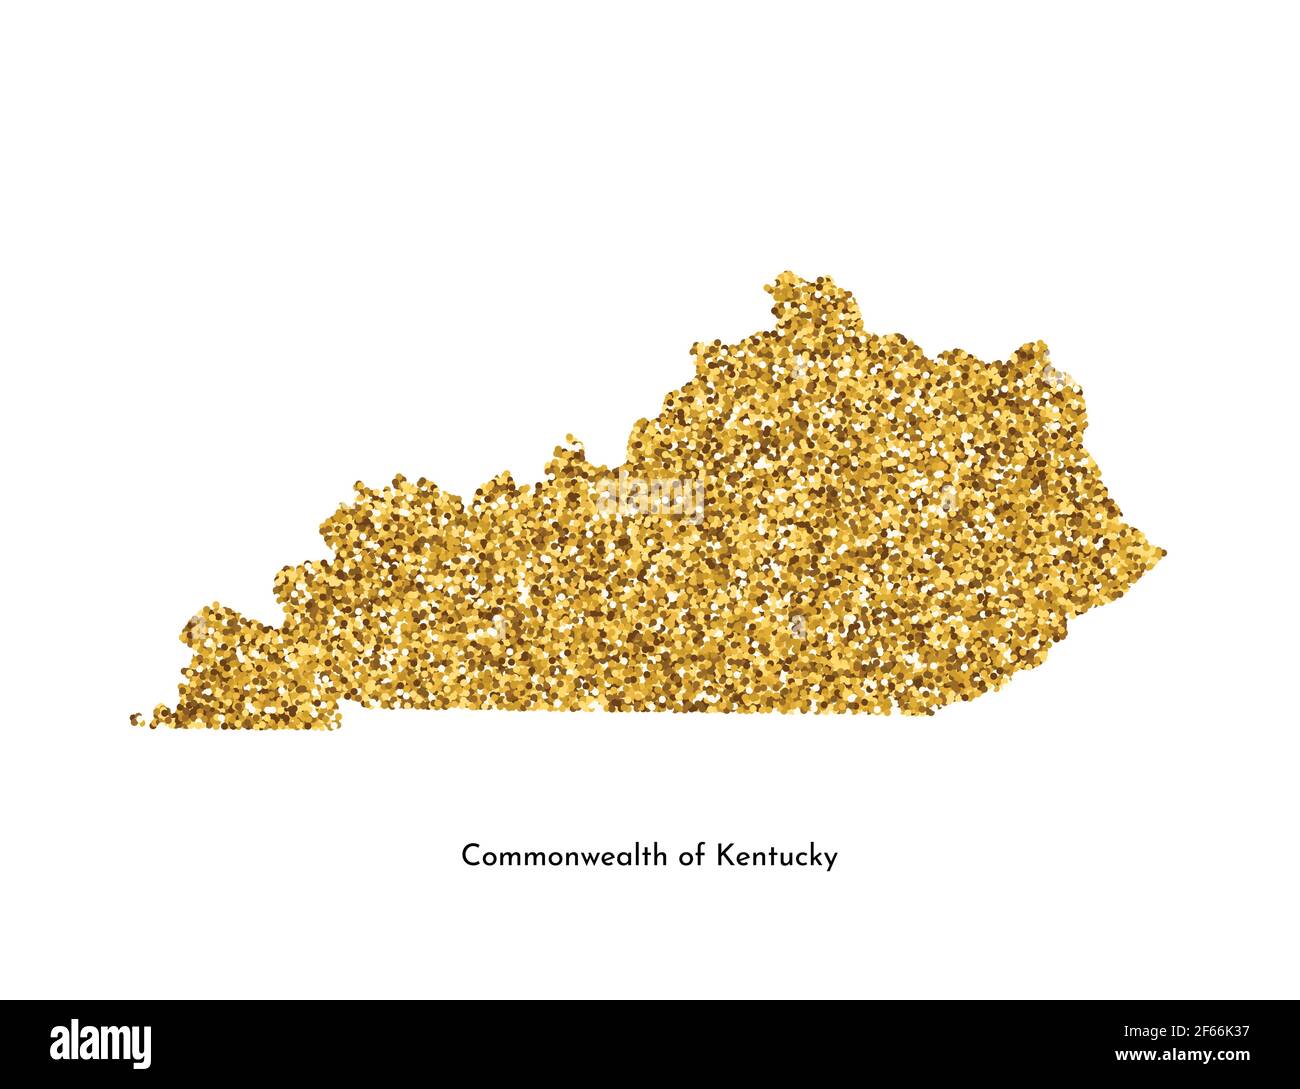 Illustrazione vettoriale isolata con mappa semplificata del Commonwealth del Kentucky (USA). Luccicante texture dorata con glitter. Modello di decorazione. Illustrazione Vettoriale